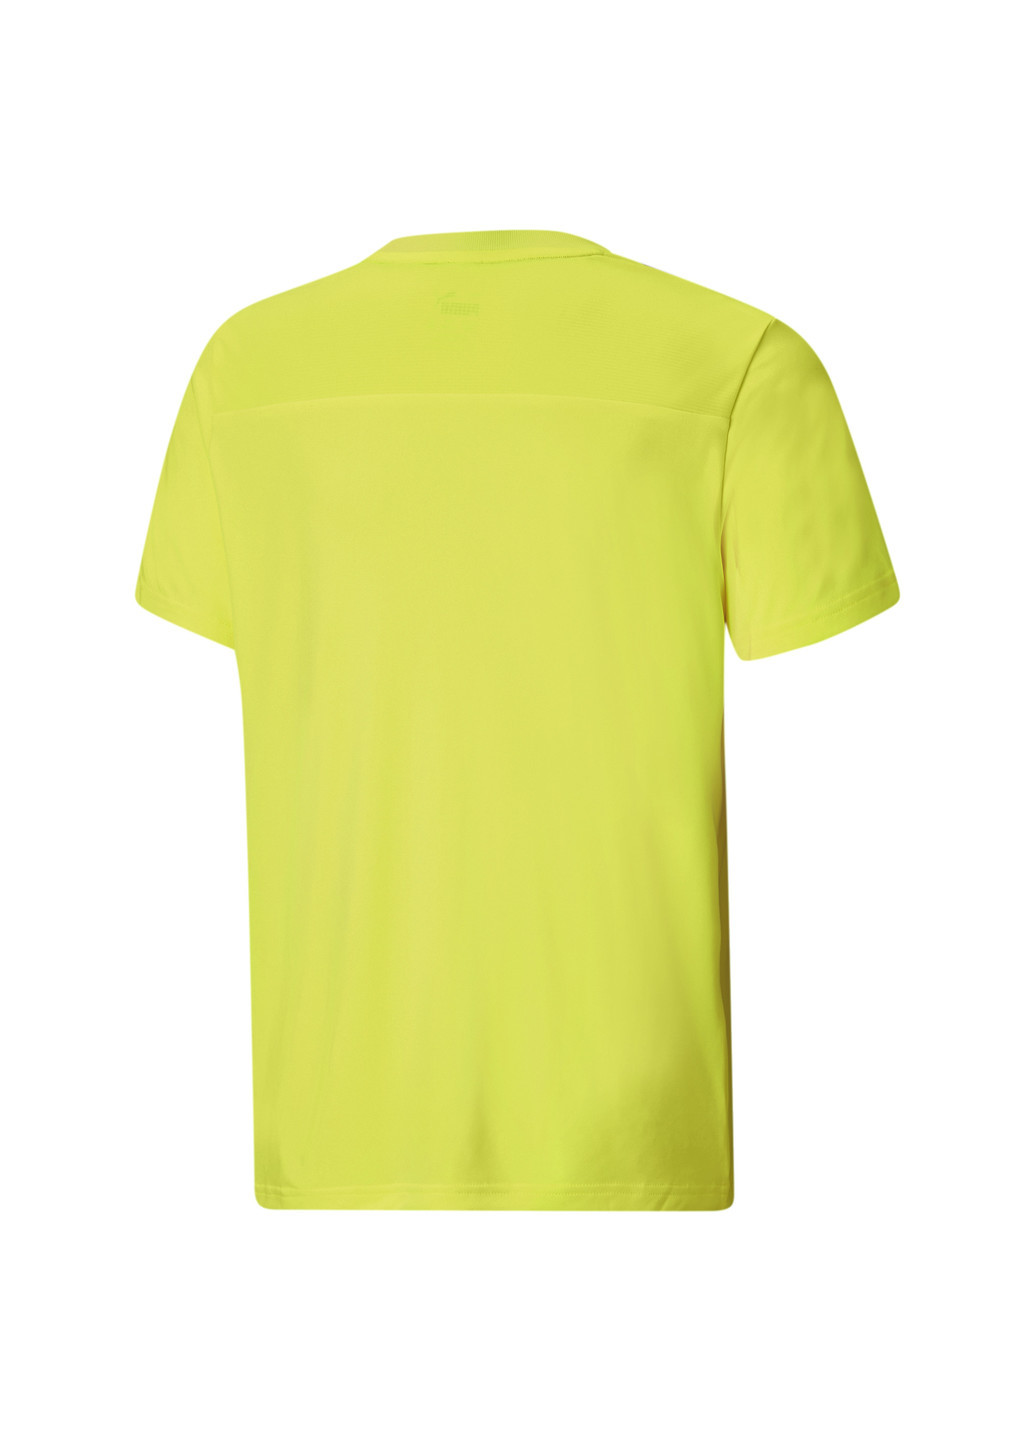 Желтая демисезонная детская футболка active sports youth tee Puma